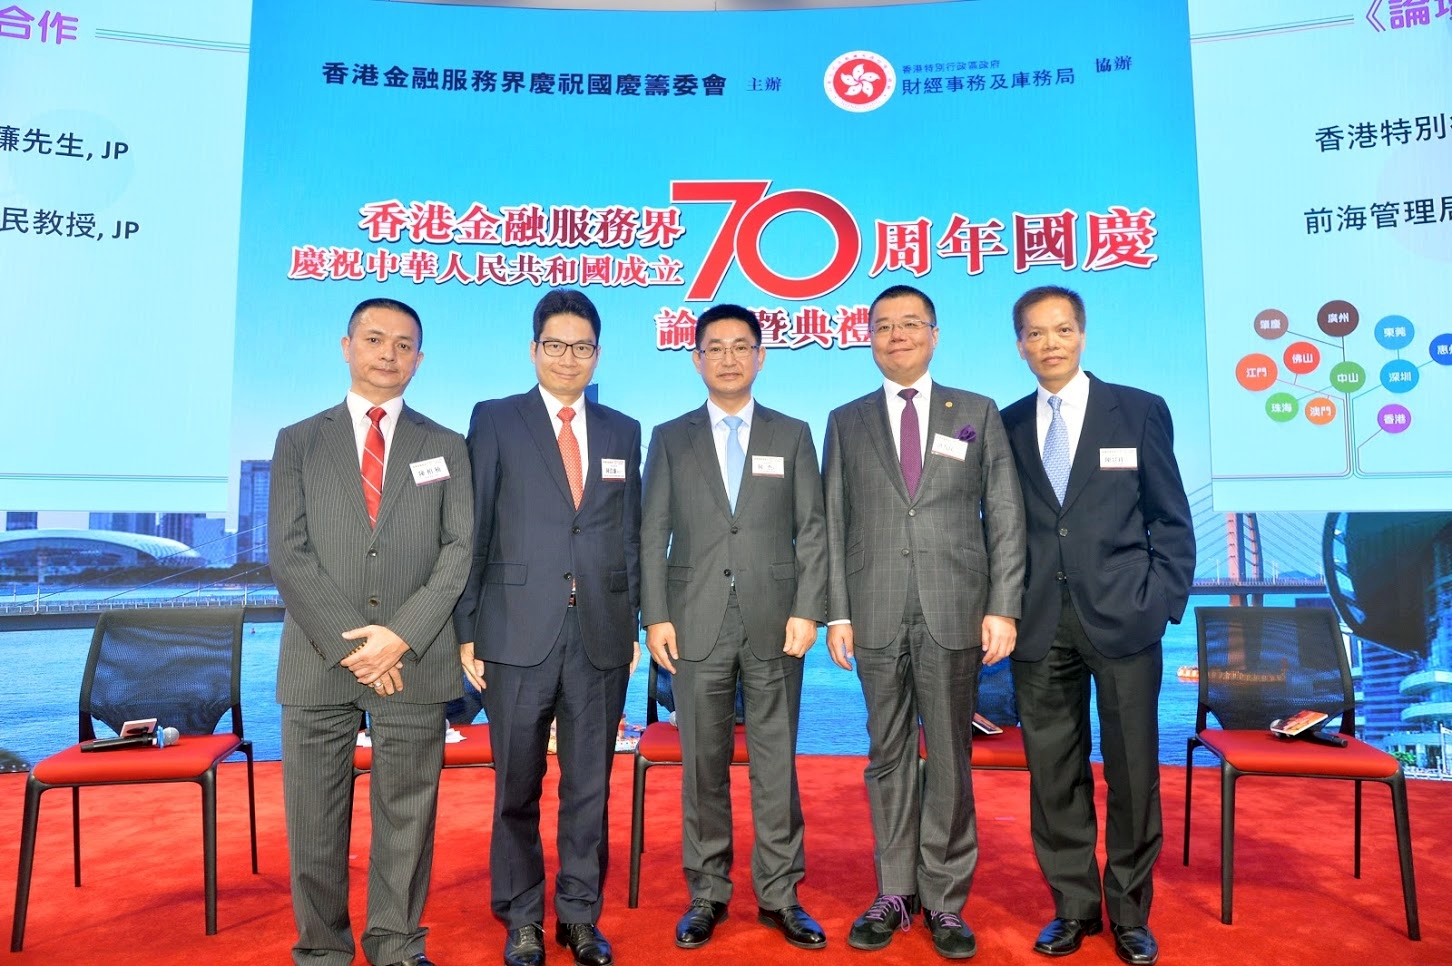 2019年9月10日香港金融服務界慶祝中華人民共和國成立七十周年國慶論壇暨典禮